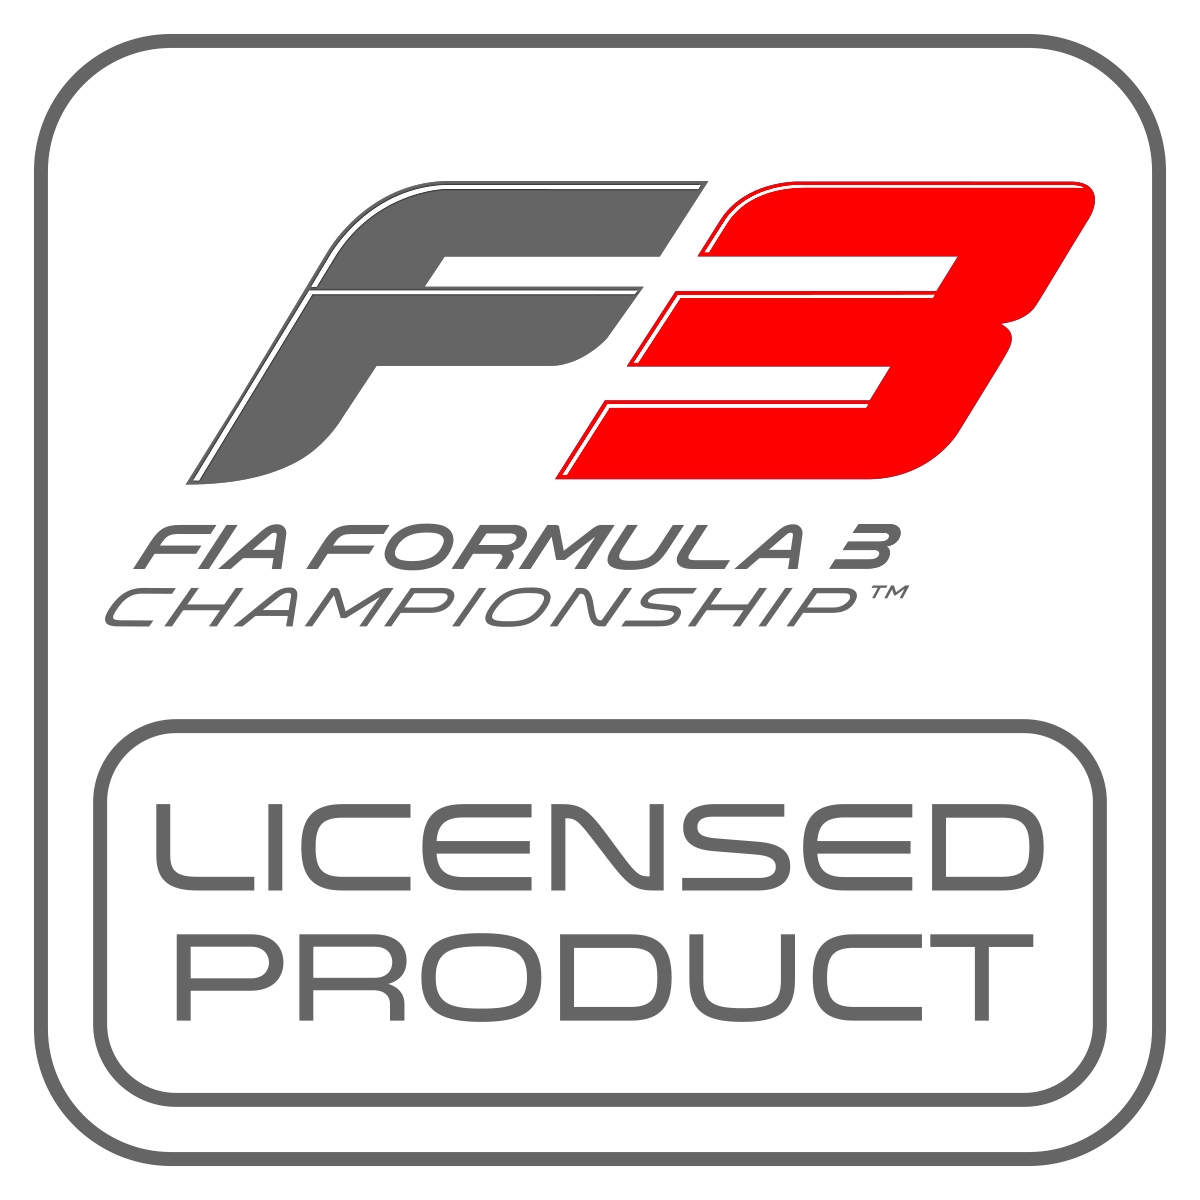 Logotipo de produto licenciado F3